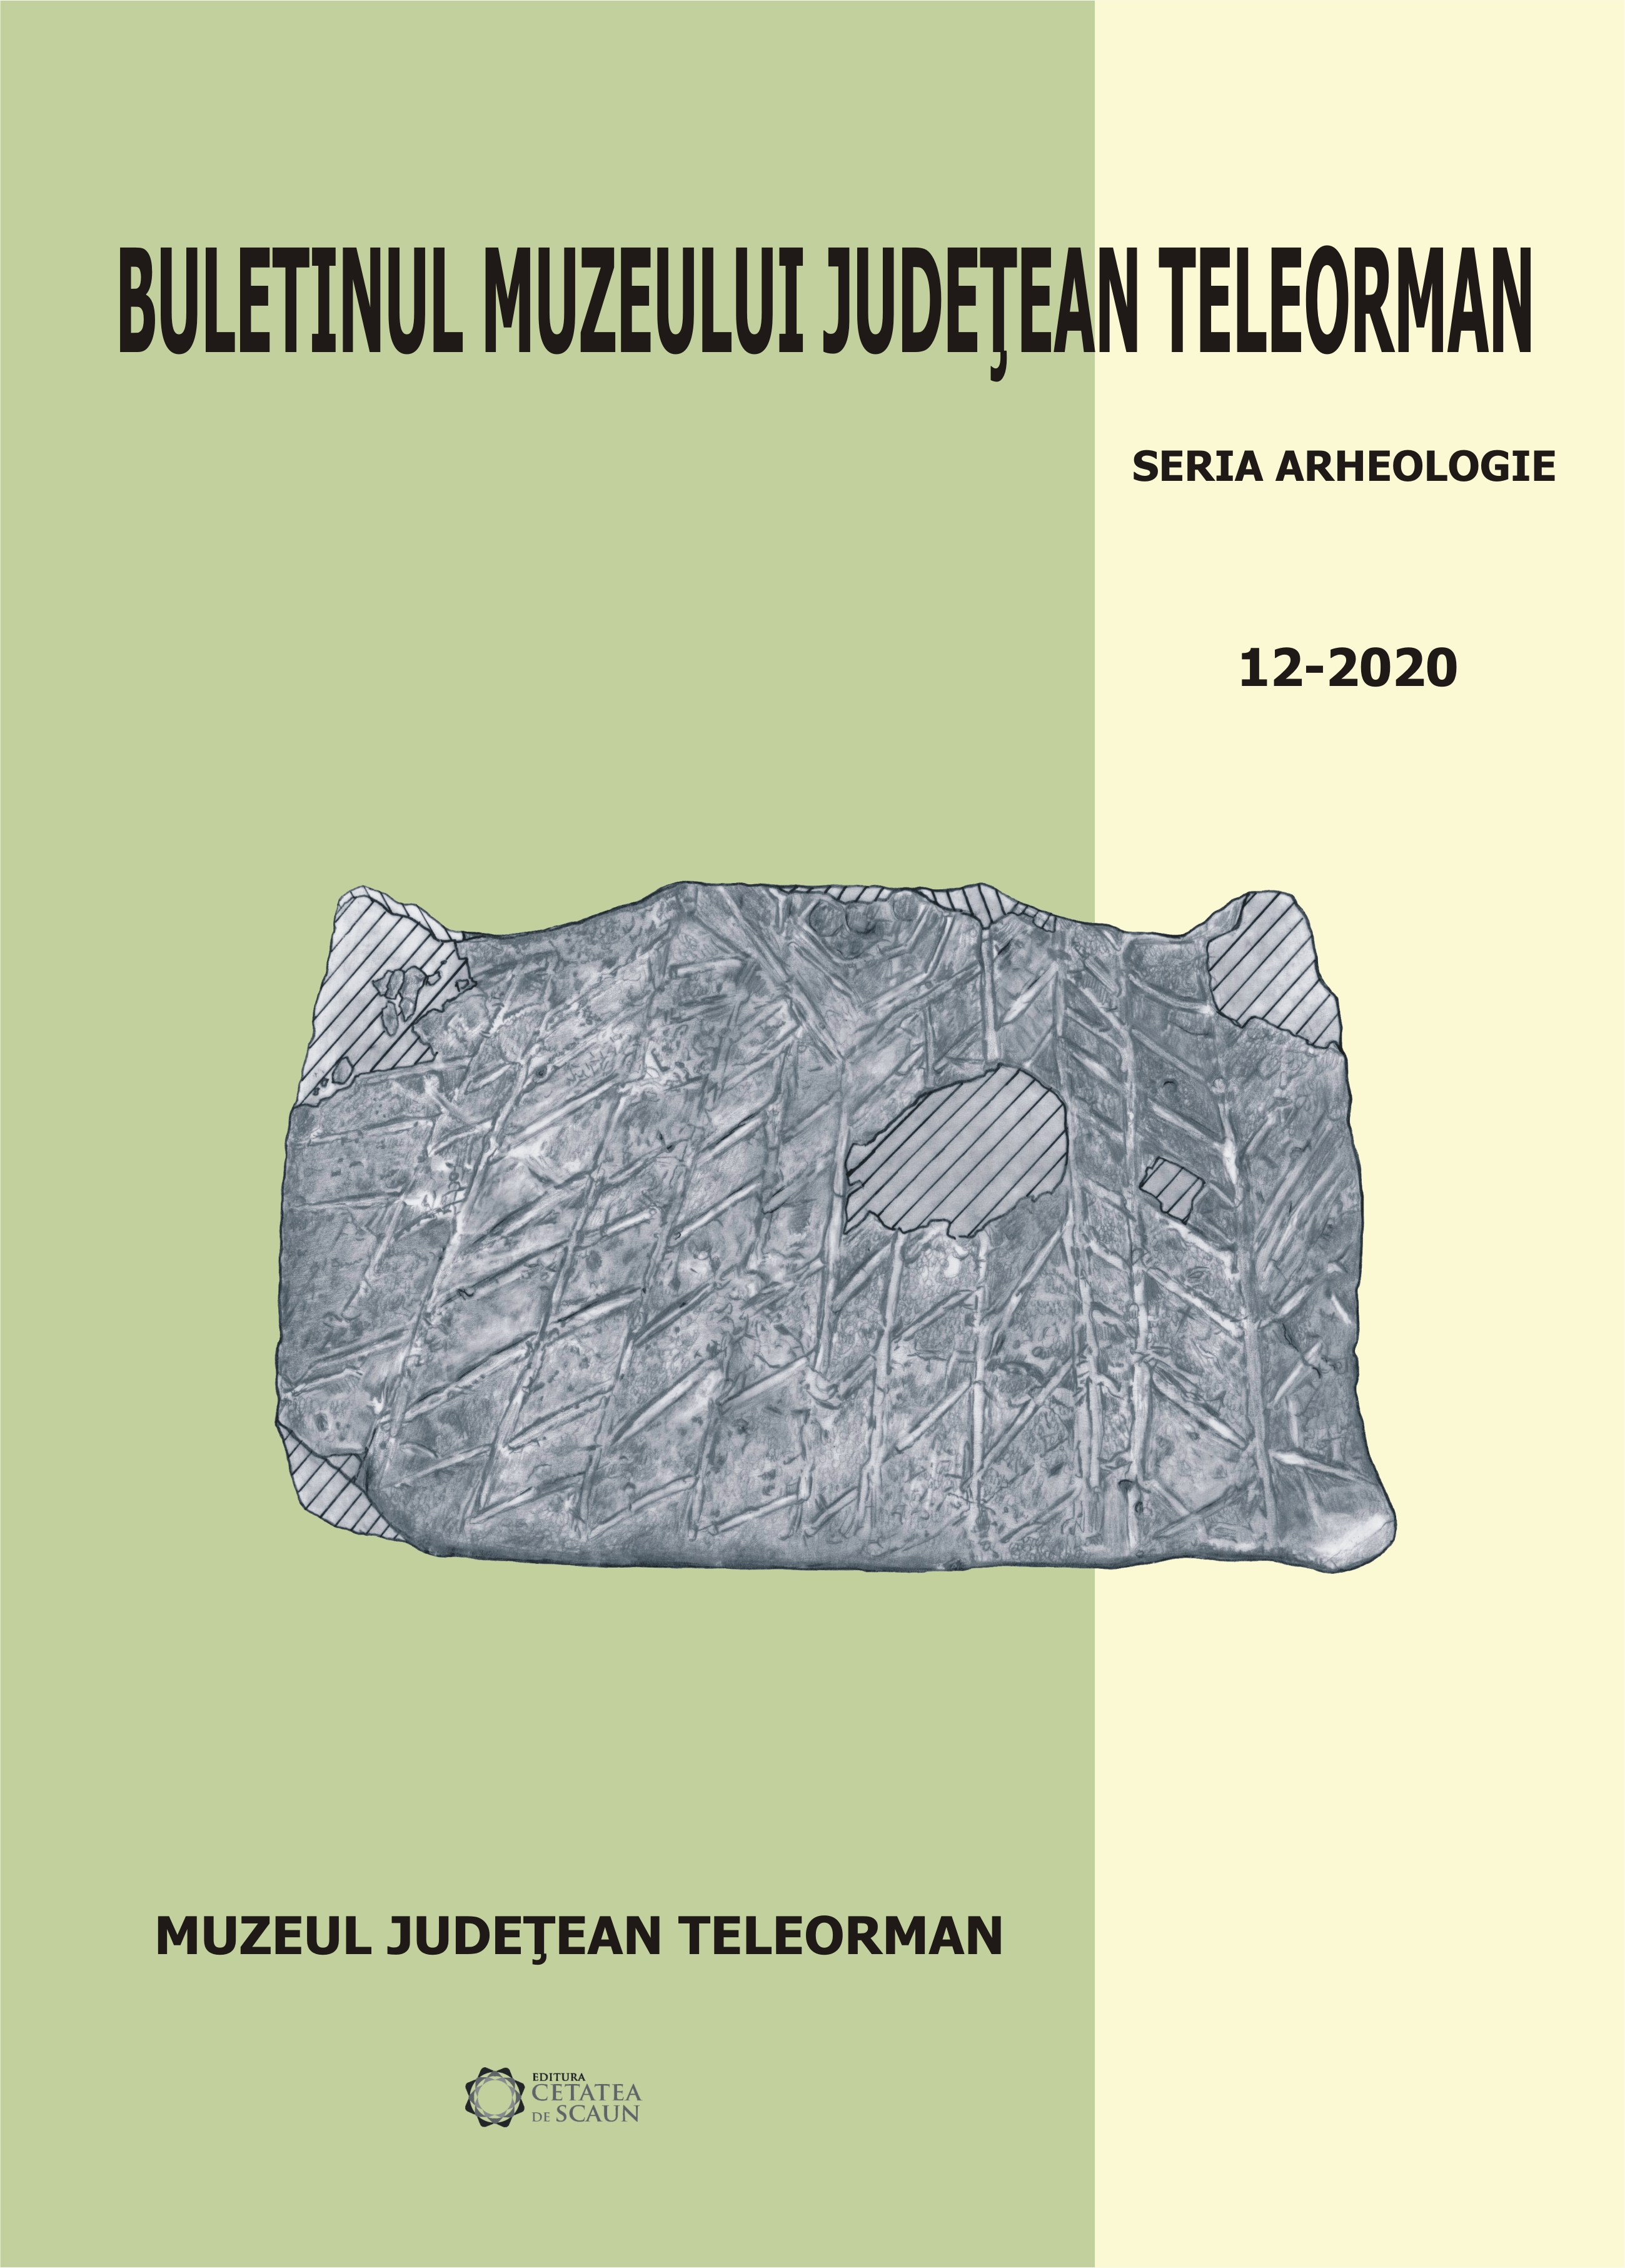 The ceramic tablet from Alexandria ‘Limonagiul’ (V.V. 07), Teleorman County Cover Image